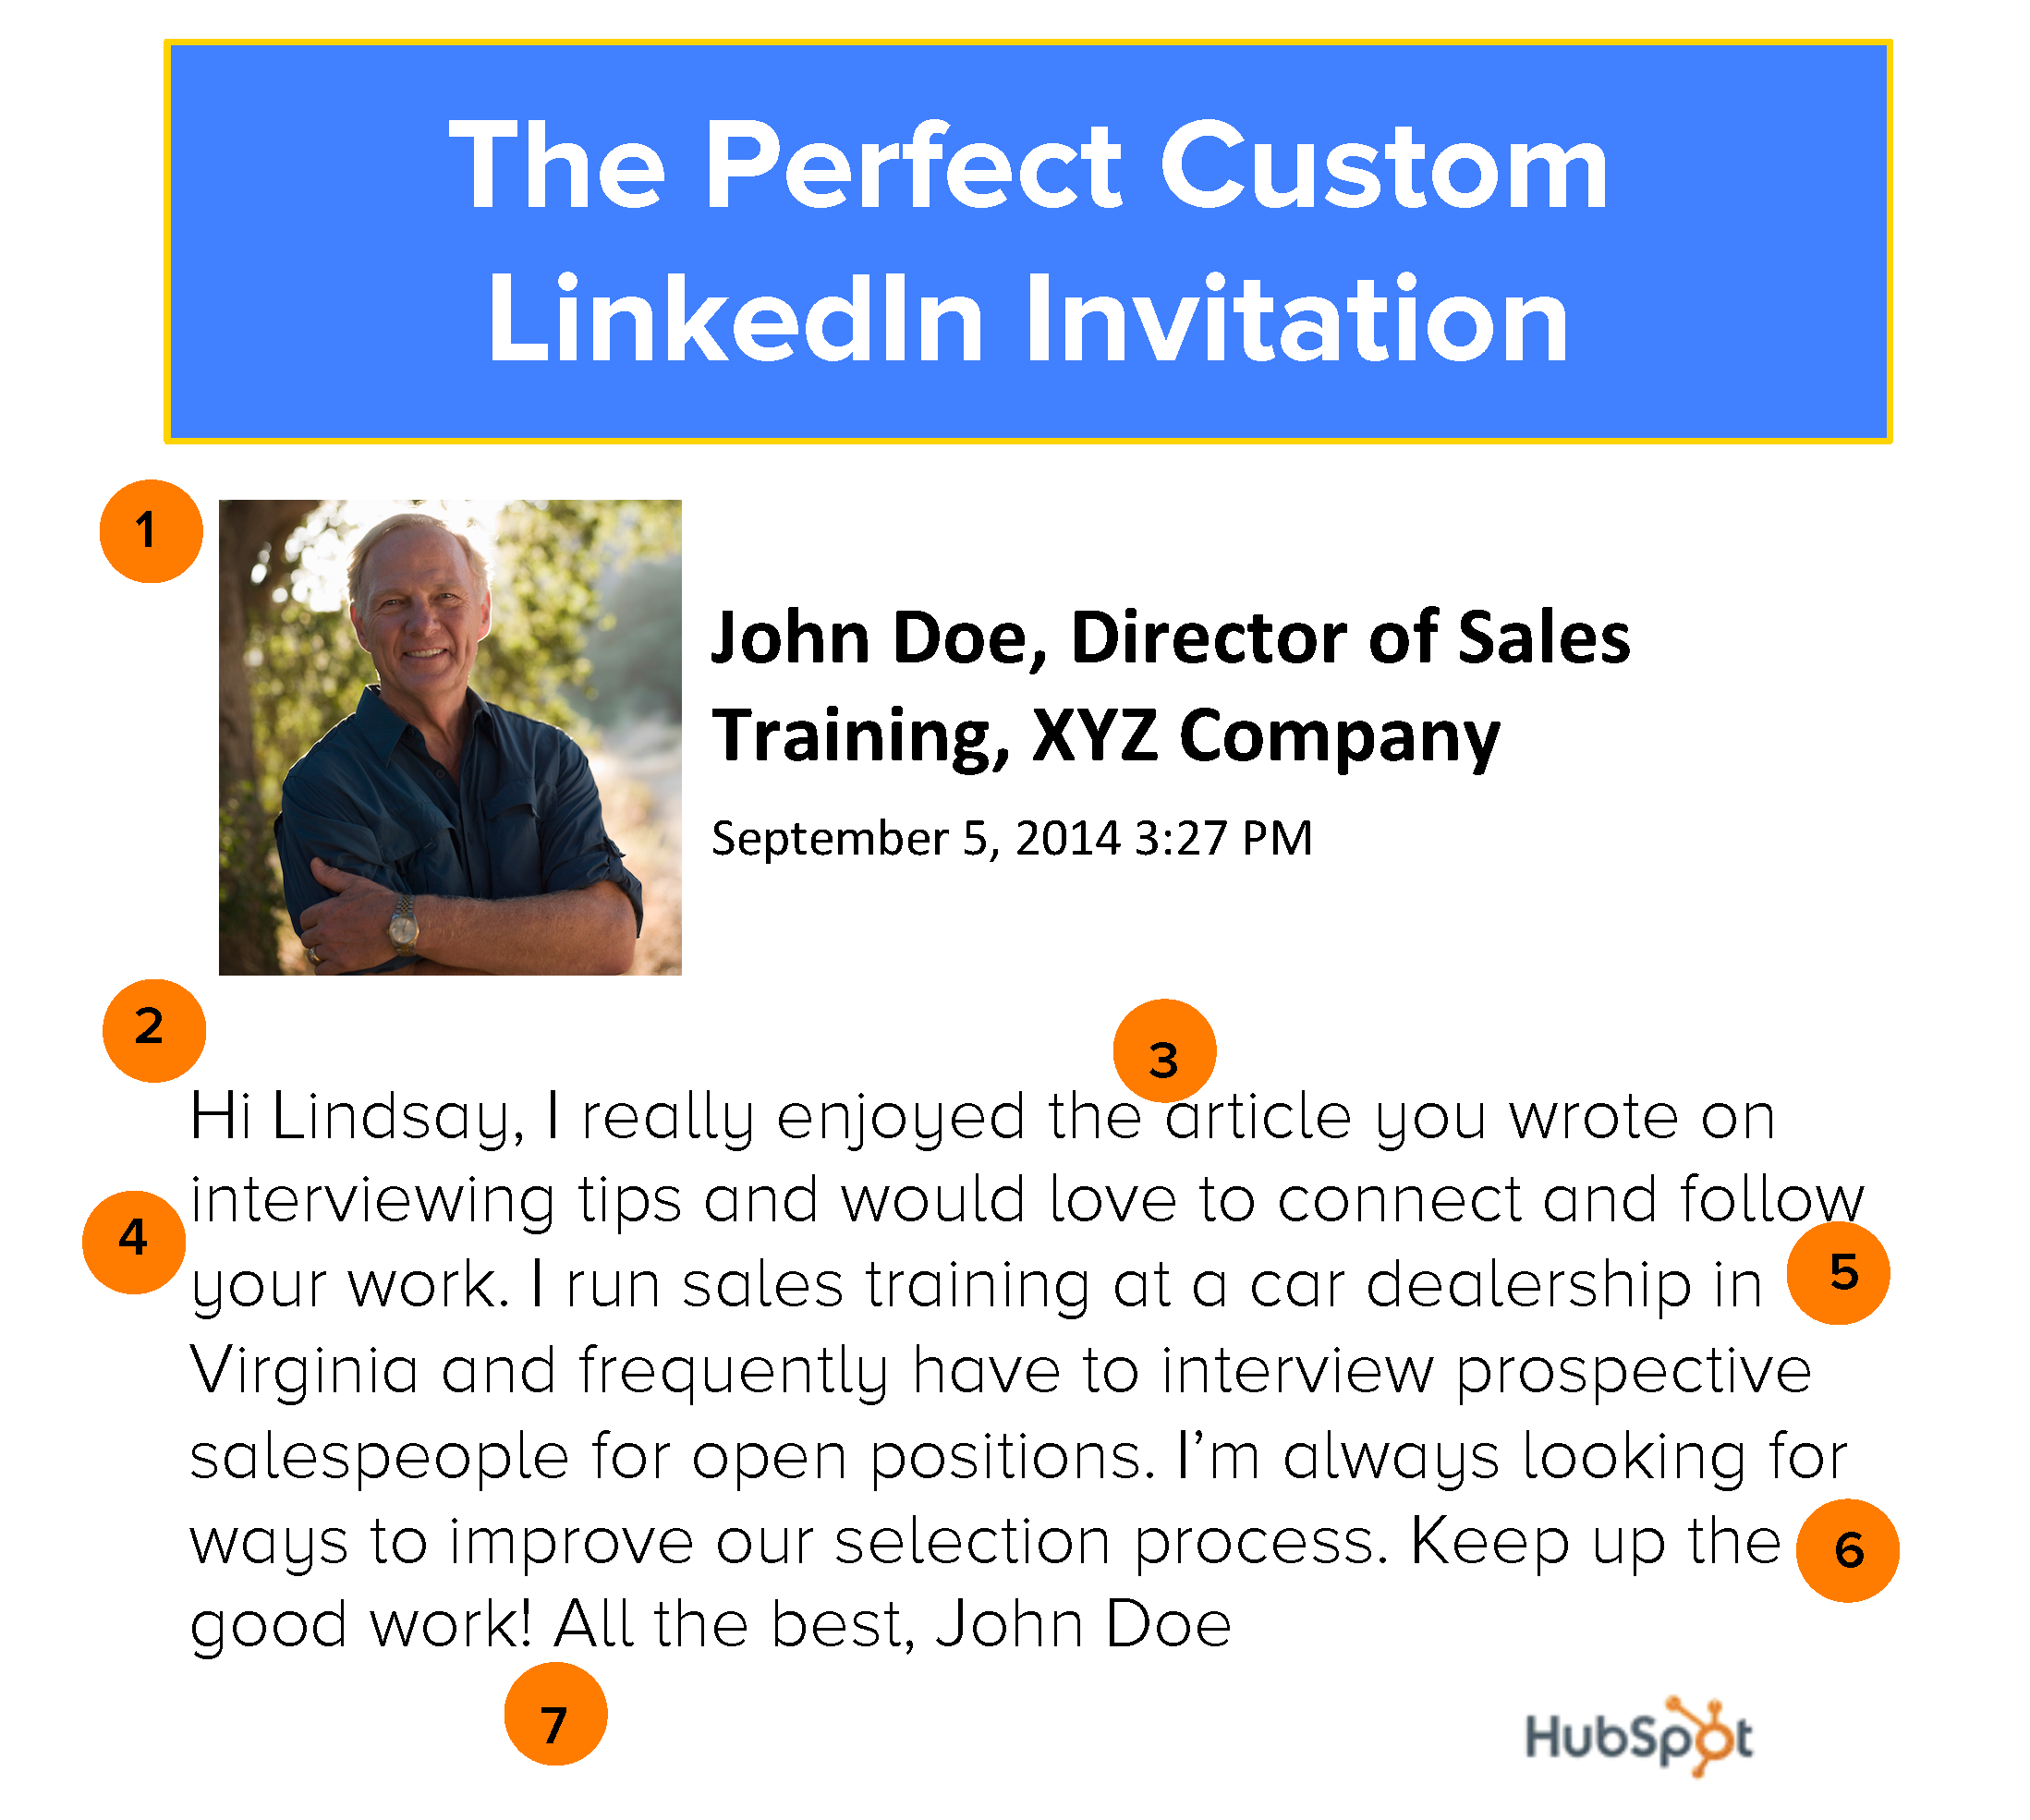 Tips om een effectieve LinkedIn uitnodiging te schrijven